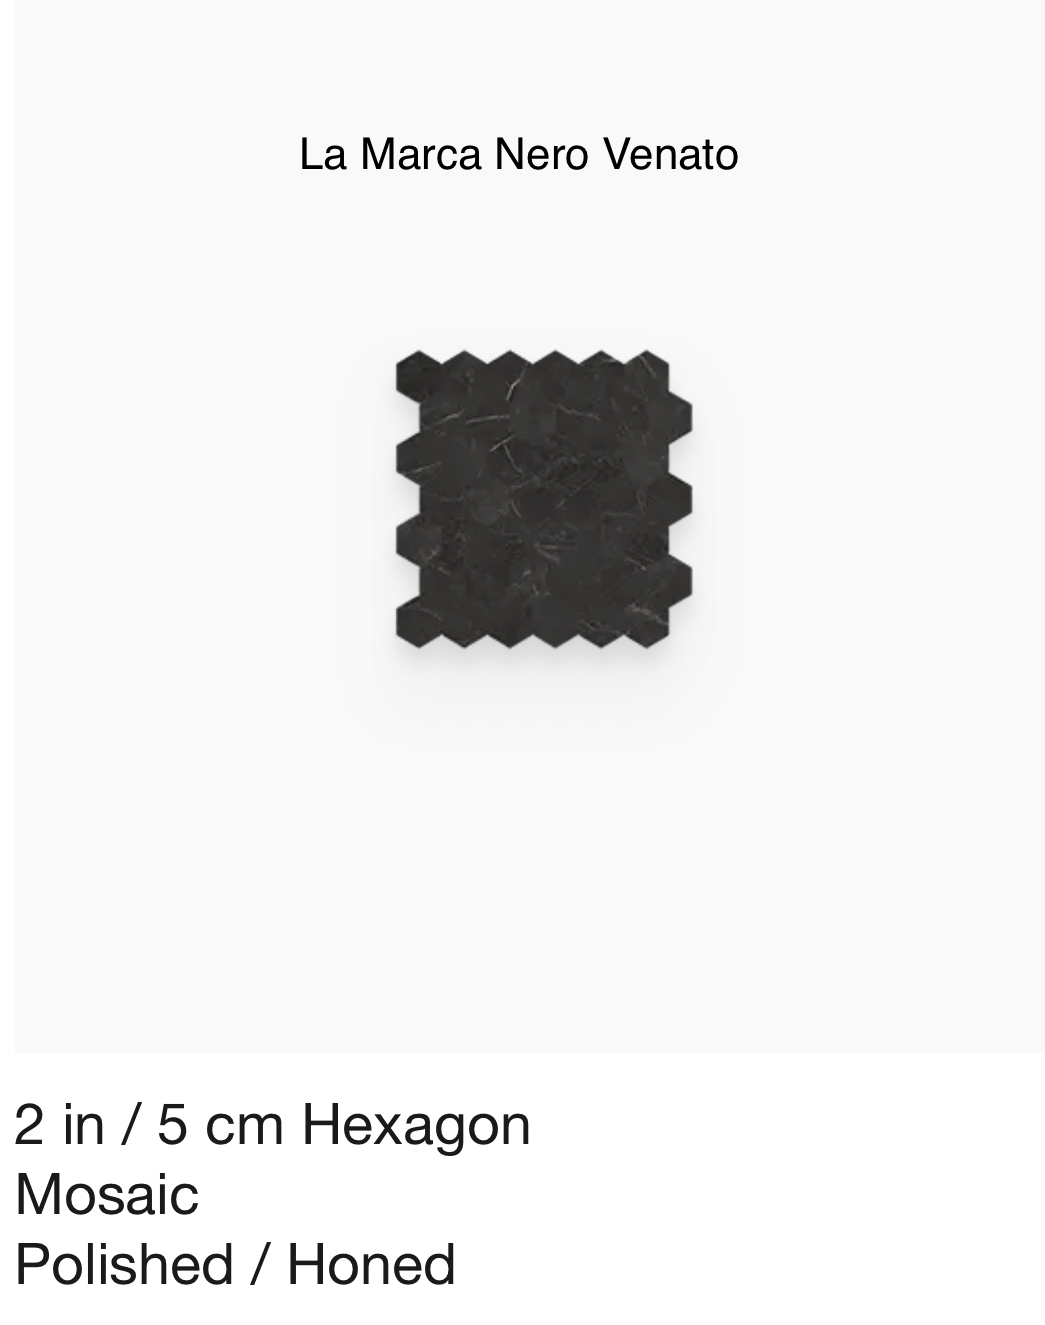 La Marca Series "Nero Venato" 2 inch hex mosaic (Anatolia) $25.14 SQFT